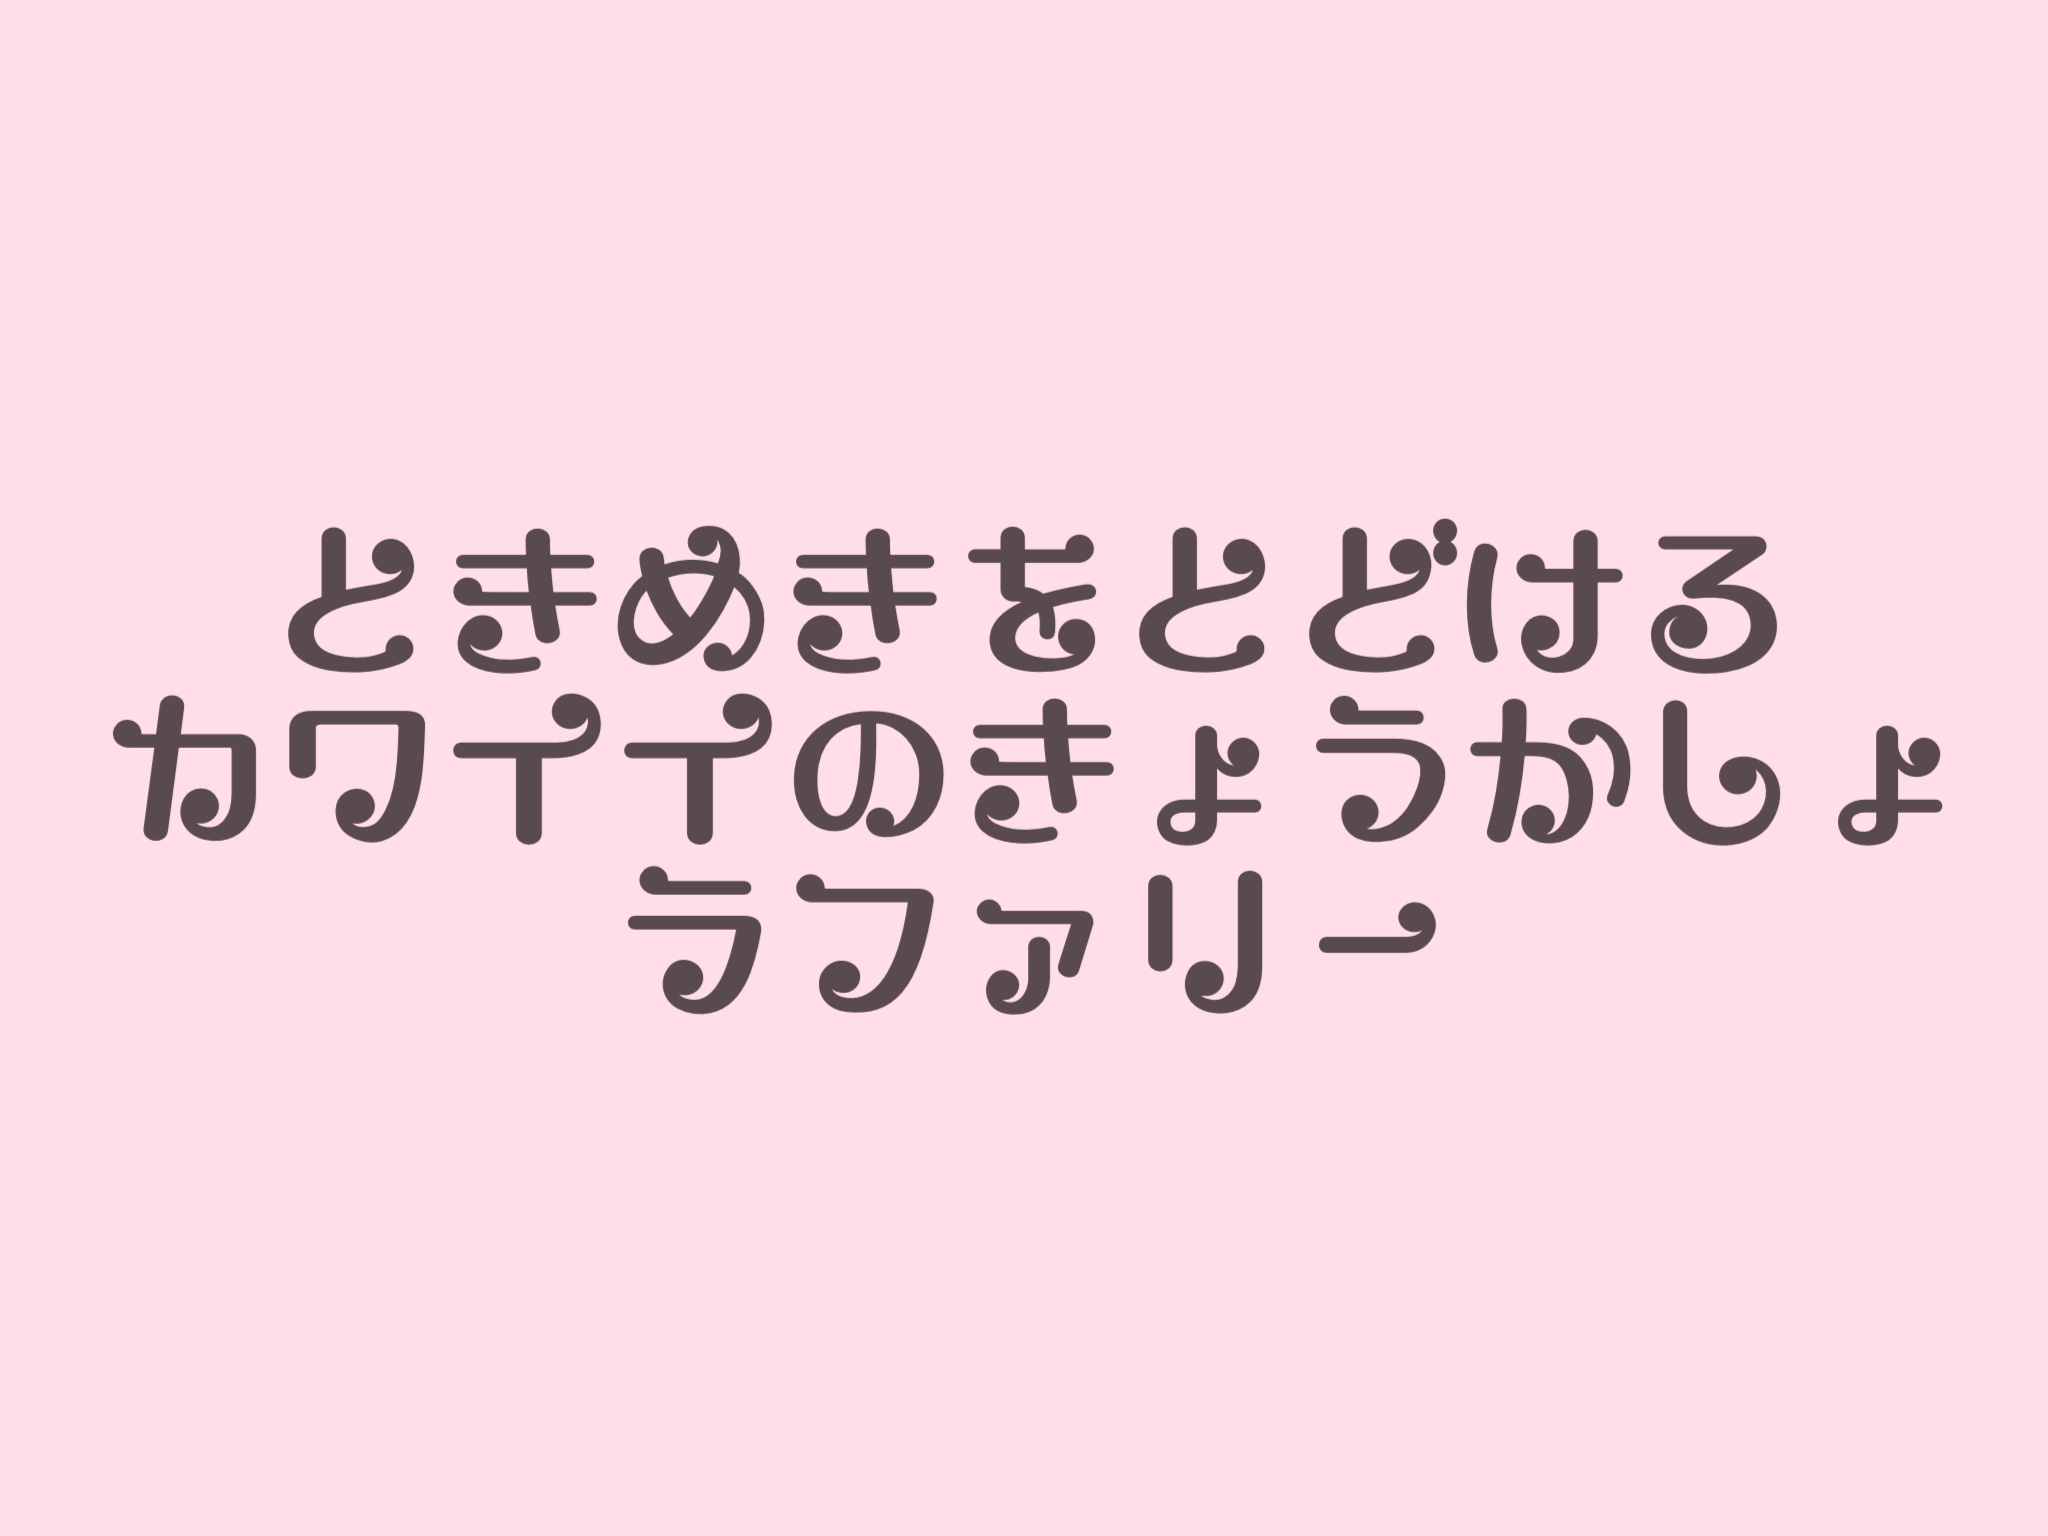 無料 商用okを厳選 おすすめの可愛い日本語フォント40種類 Lafary ラファリー